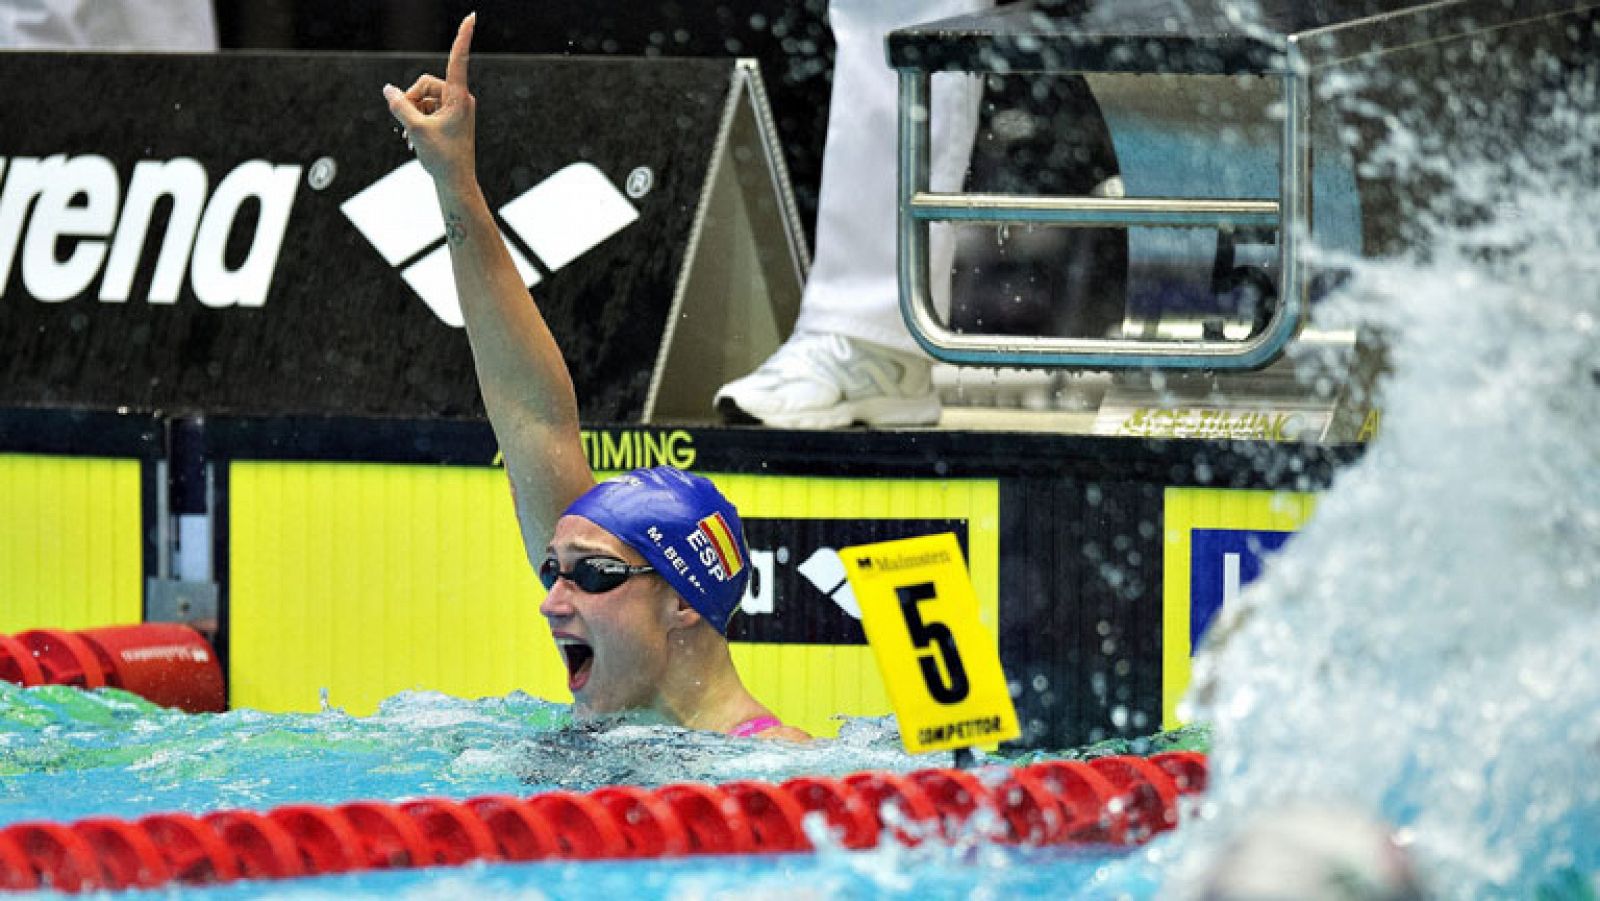 La nadadora española Mireia Belmonte se ha llevado el oro  (8:05.18) en los 800 metros libres del Campeonato Europeo de piscina corta, que se disputa en Herning, Dinamarca. La plata ha sido para la local Lotte Friis (8:08.68) y el bronce para la holandesa Sharon Rouwendaal (8:14.24).